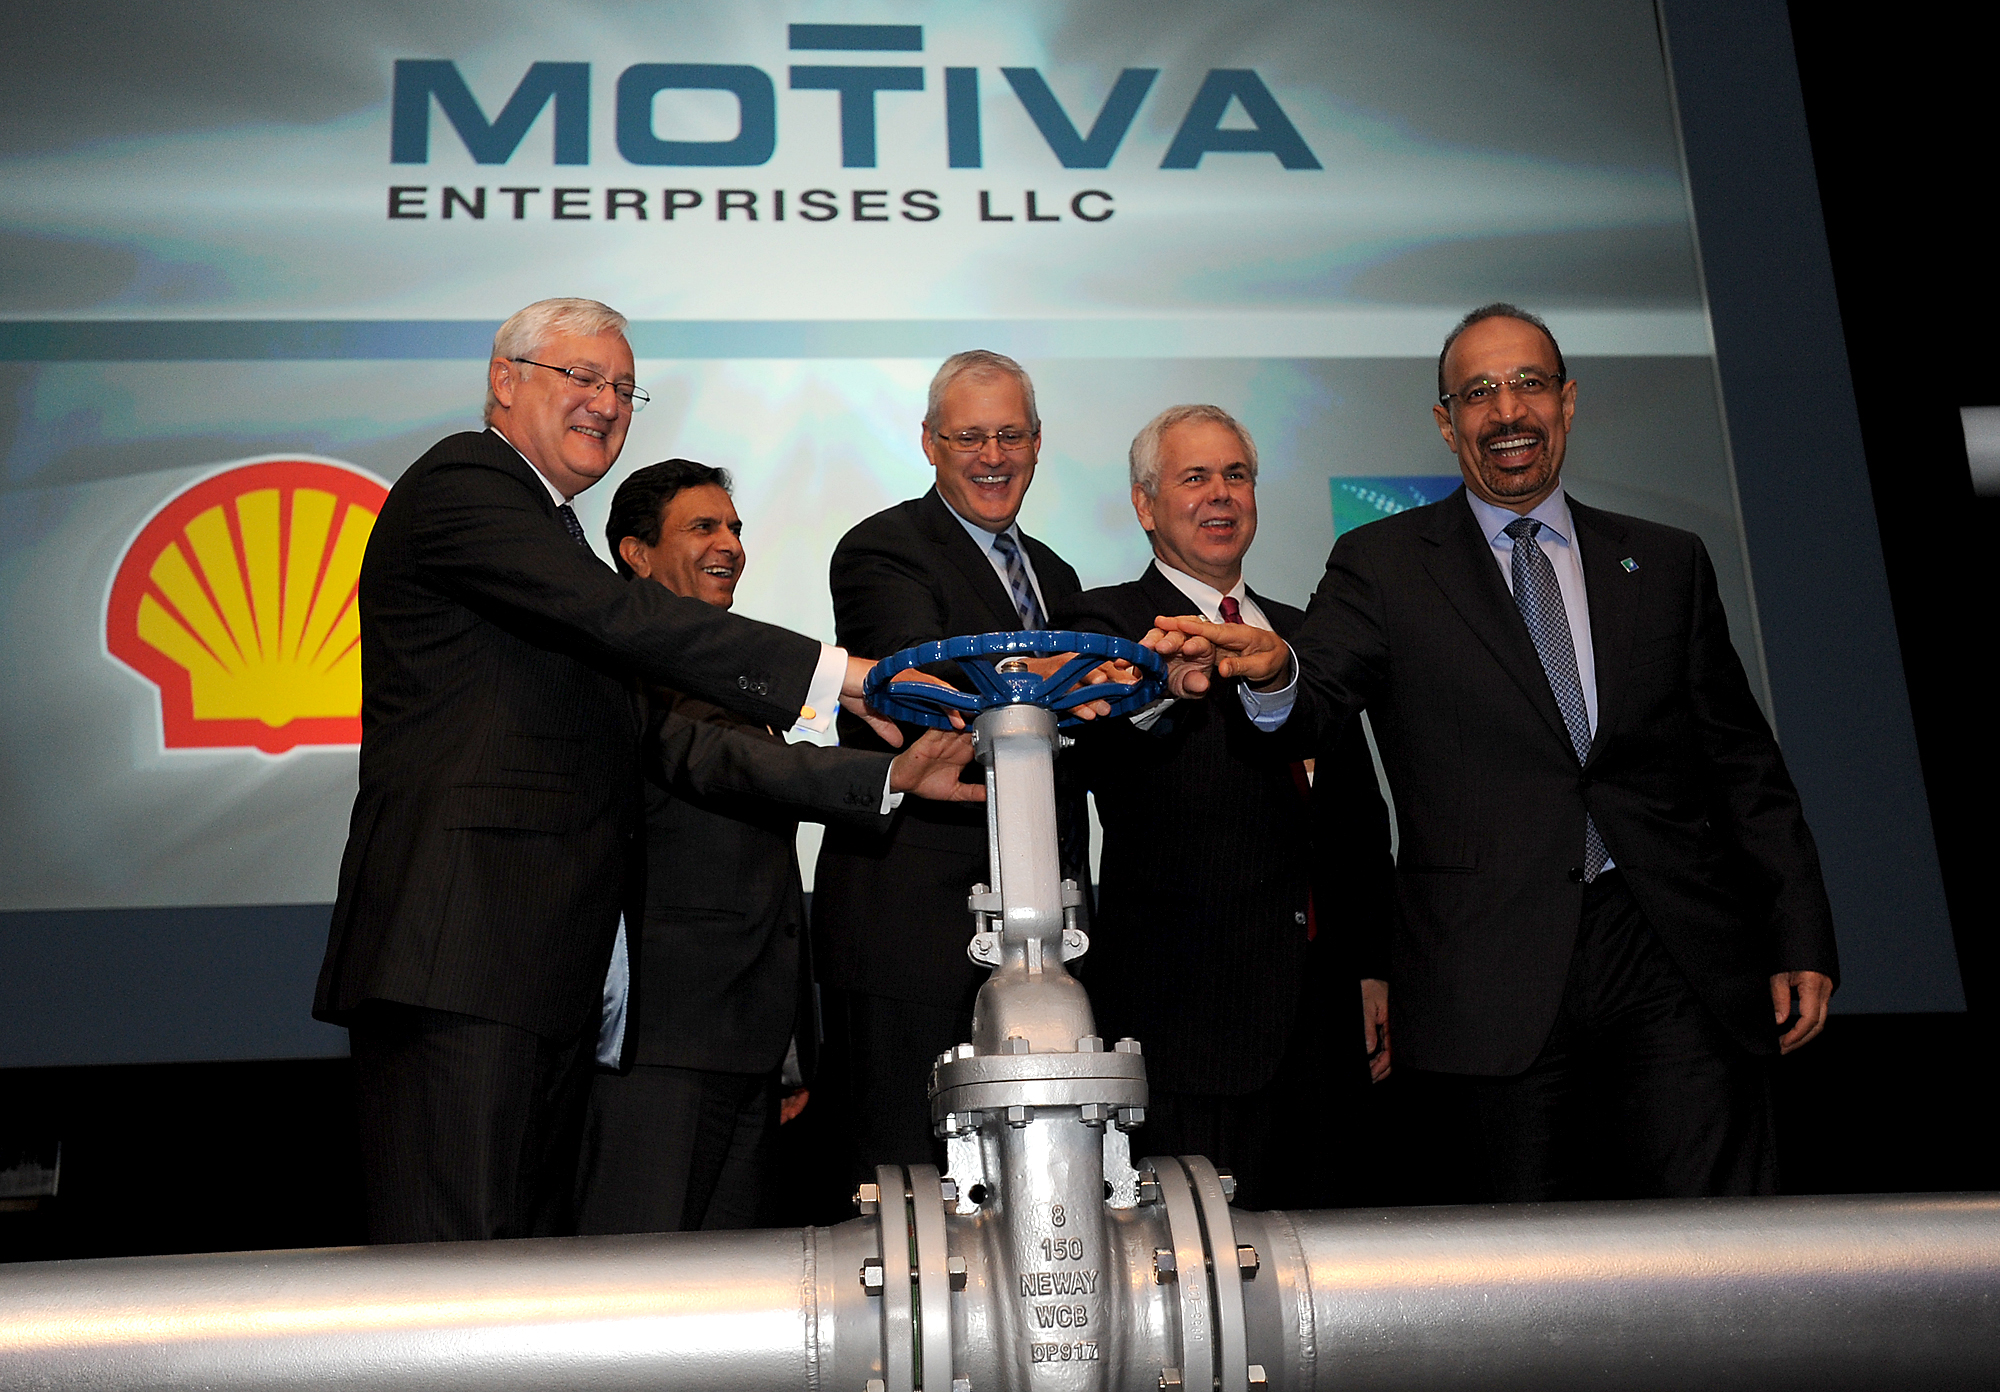 الاحتفال بتجديد مصفاة موتيفا عام 2012 بحضور ممثلي شركة شل قبل تخارجها